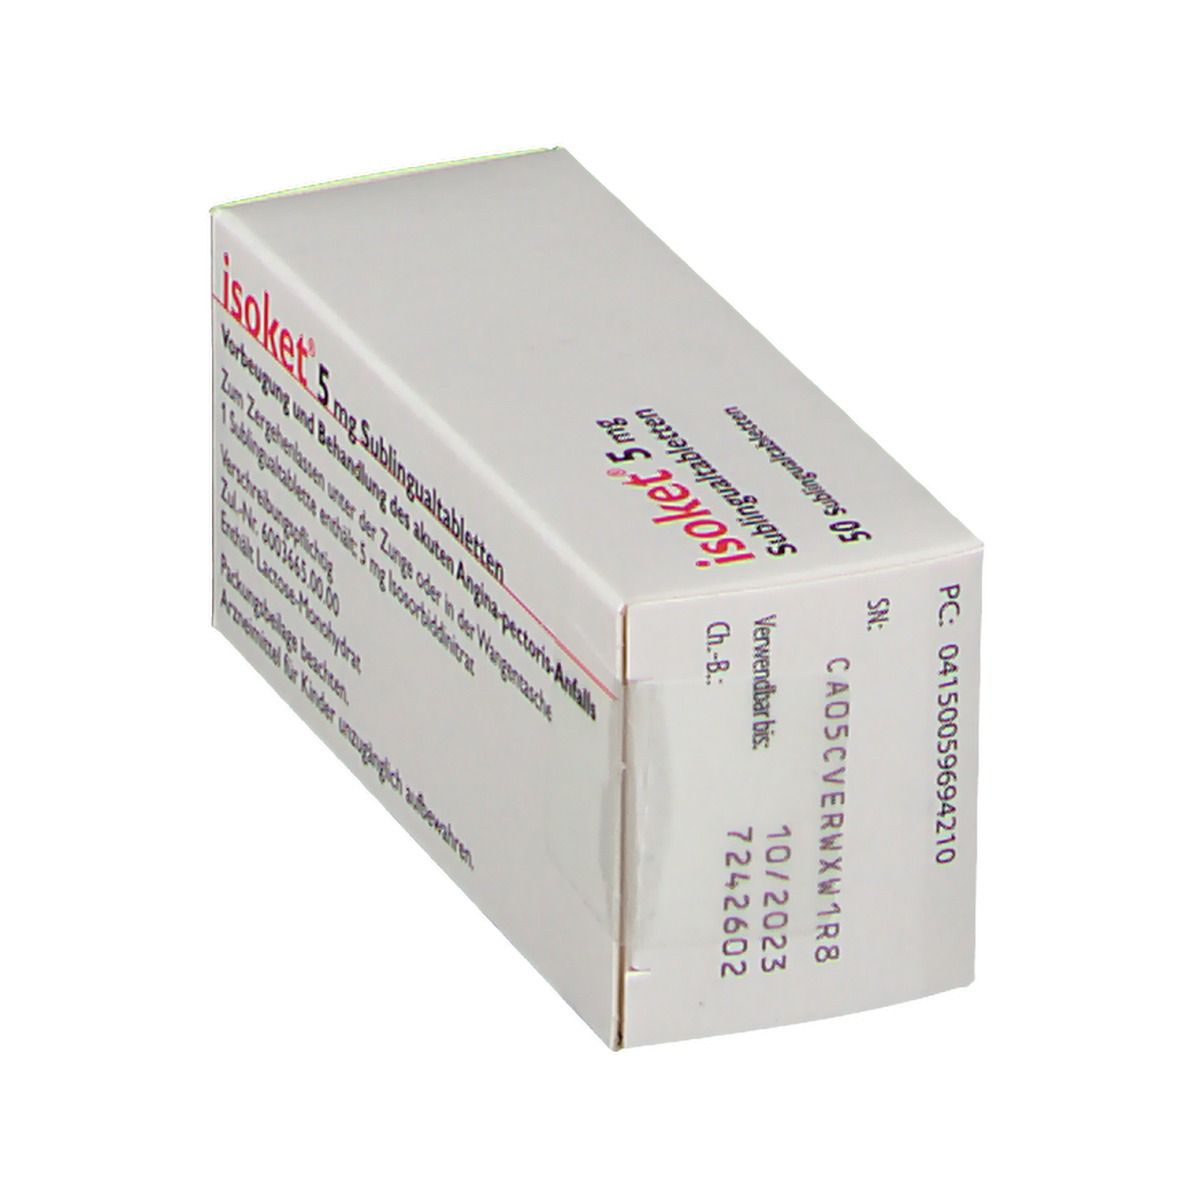 isoket® 5 mg